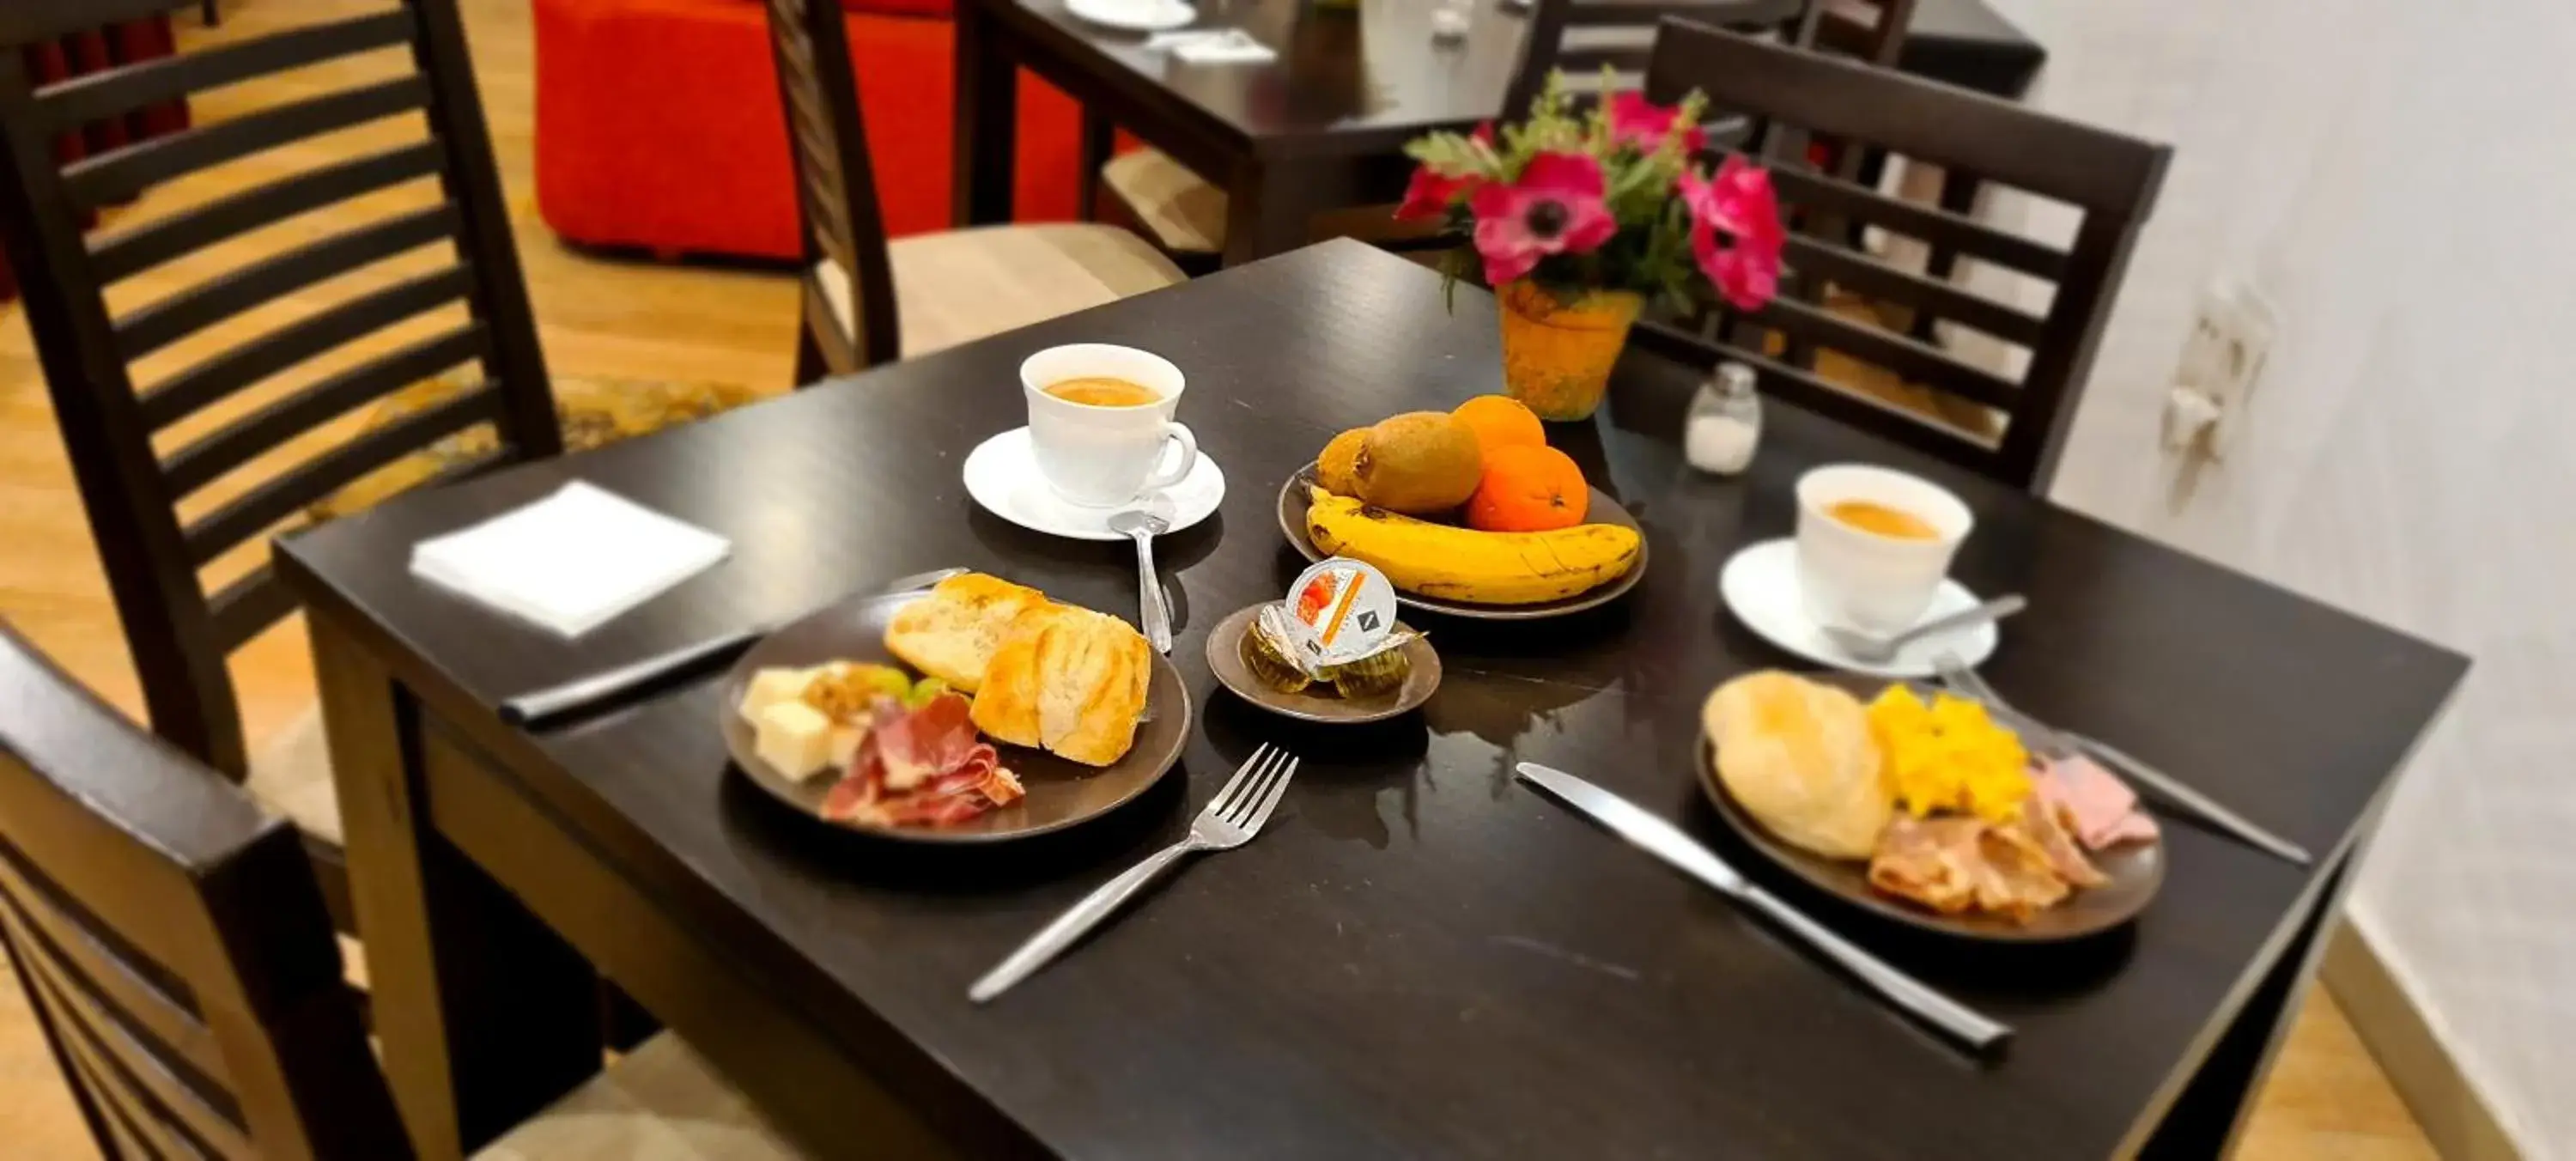 Breakfast in Hotel Duquesa